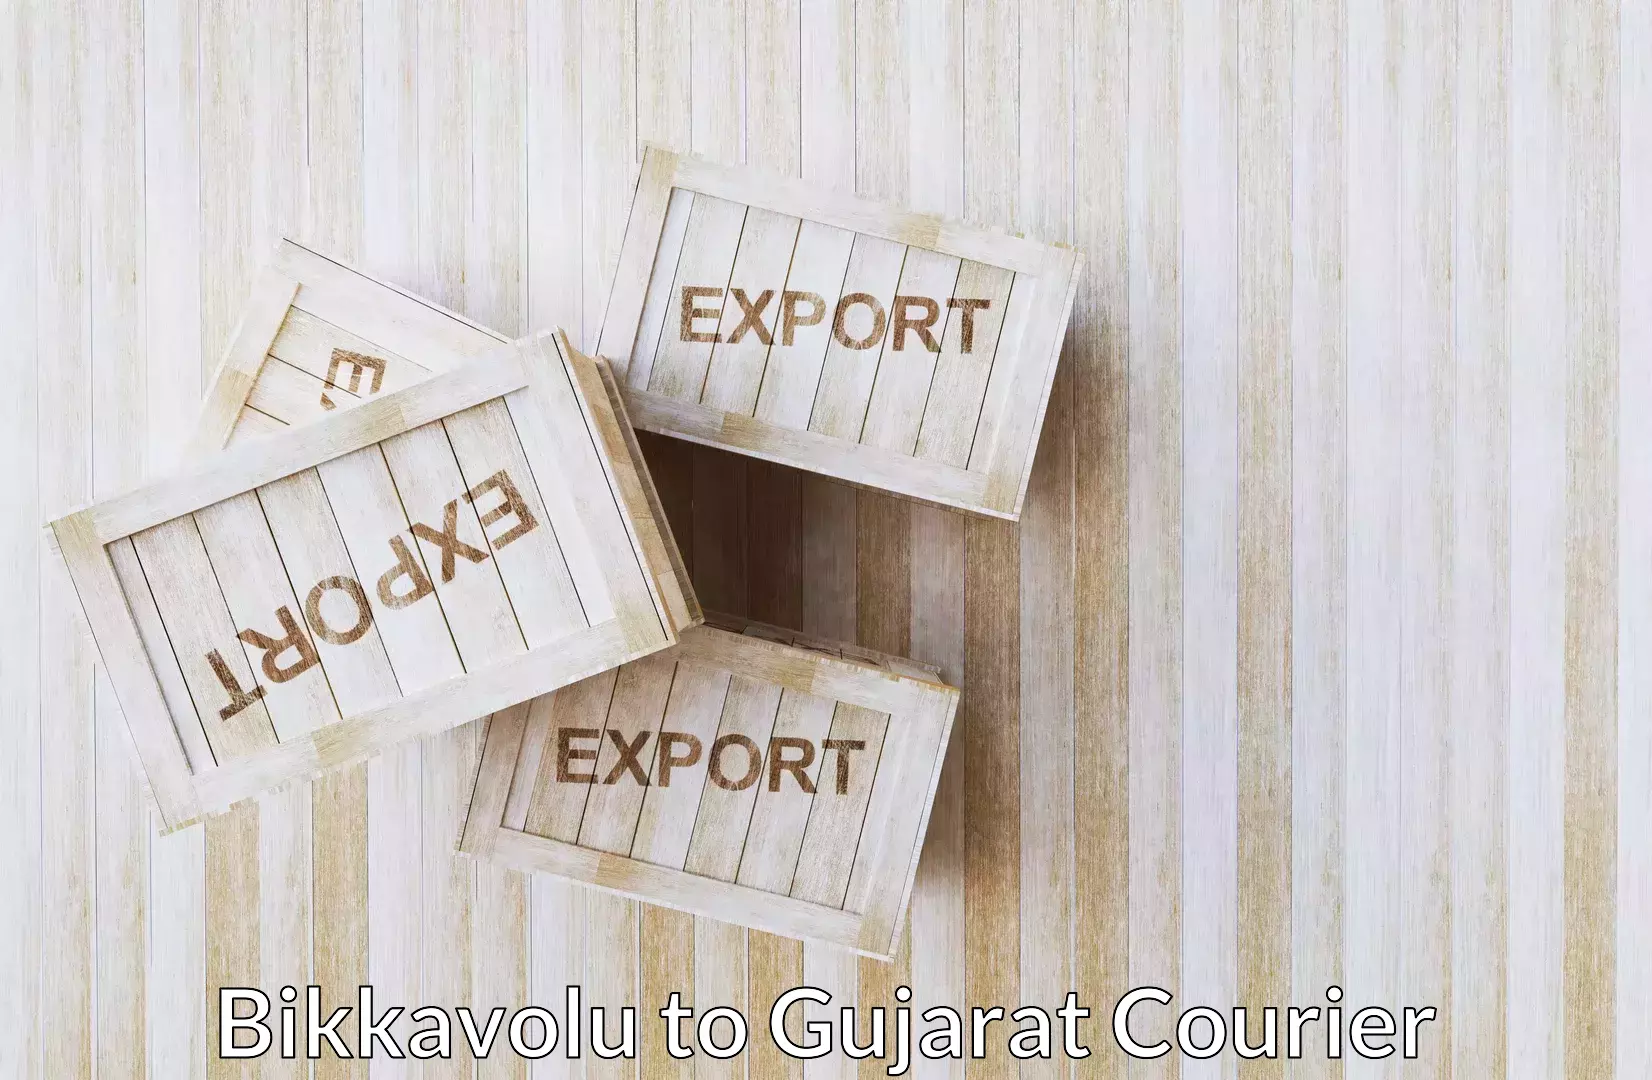 Online household goods transport Bikkavolu to Gujarat